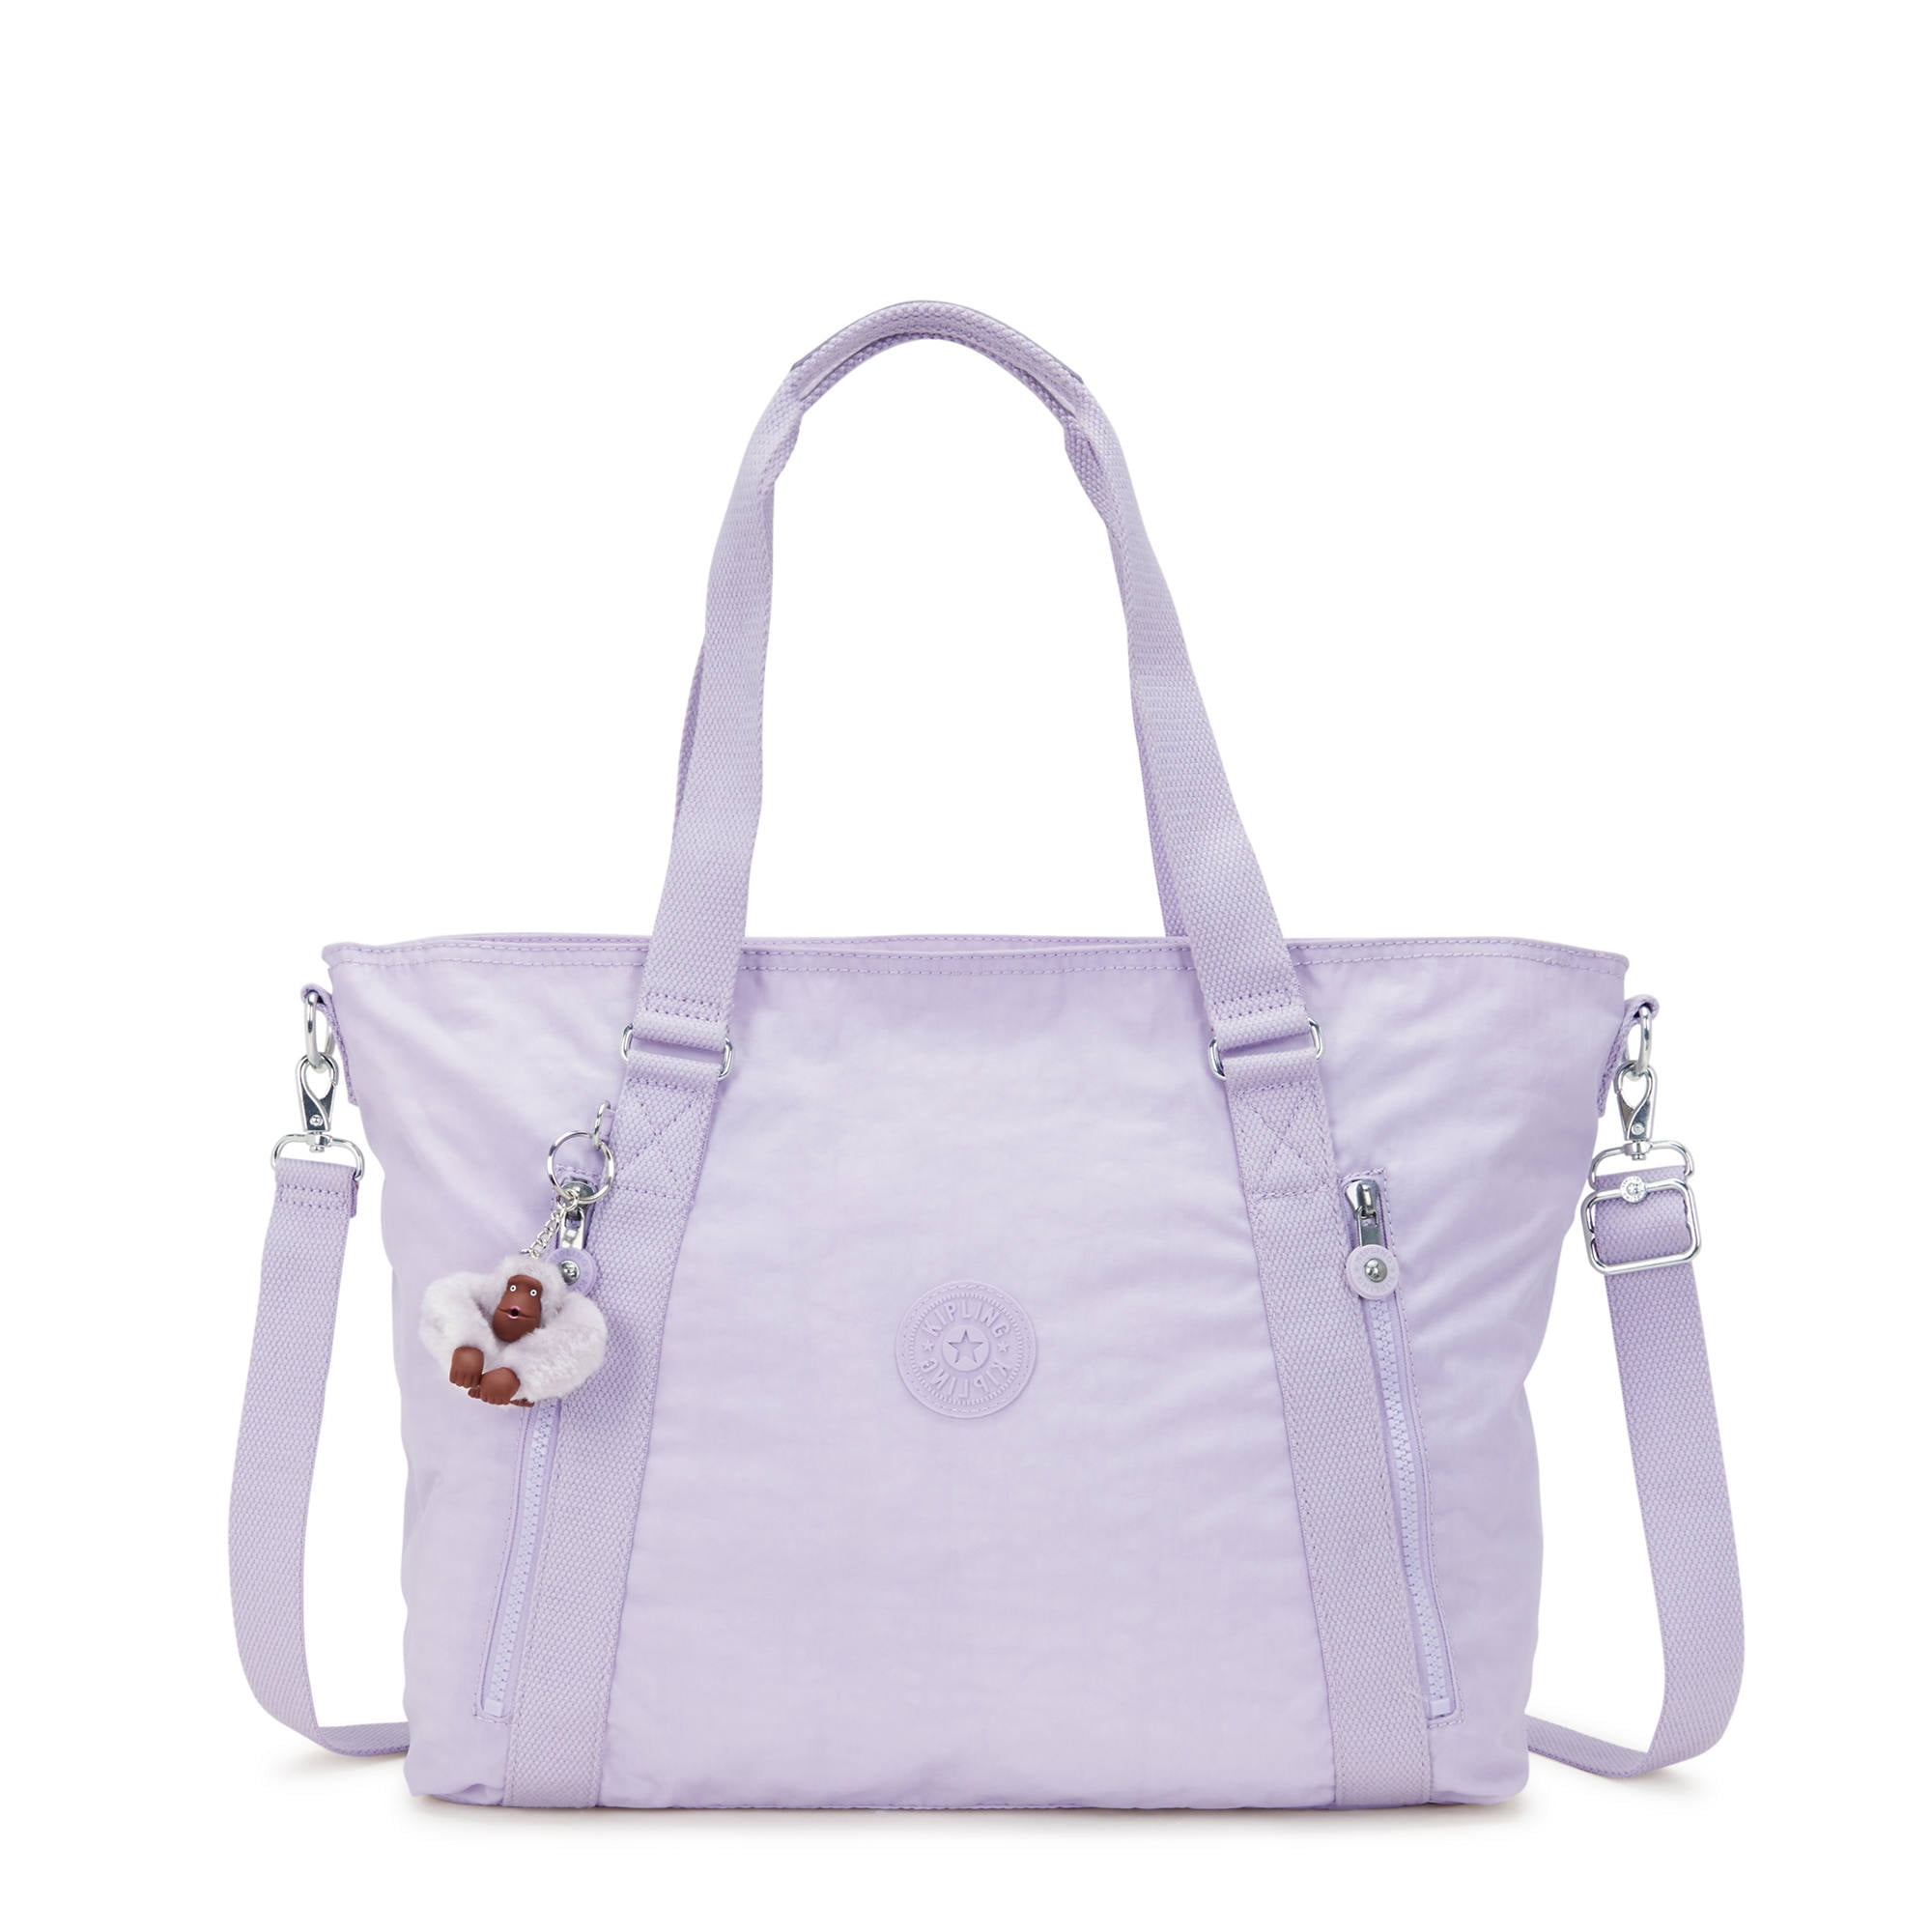 Kipling Women's Skyler Tote Bag Adjustable Strap - Walmart.com